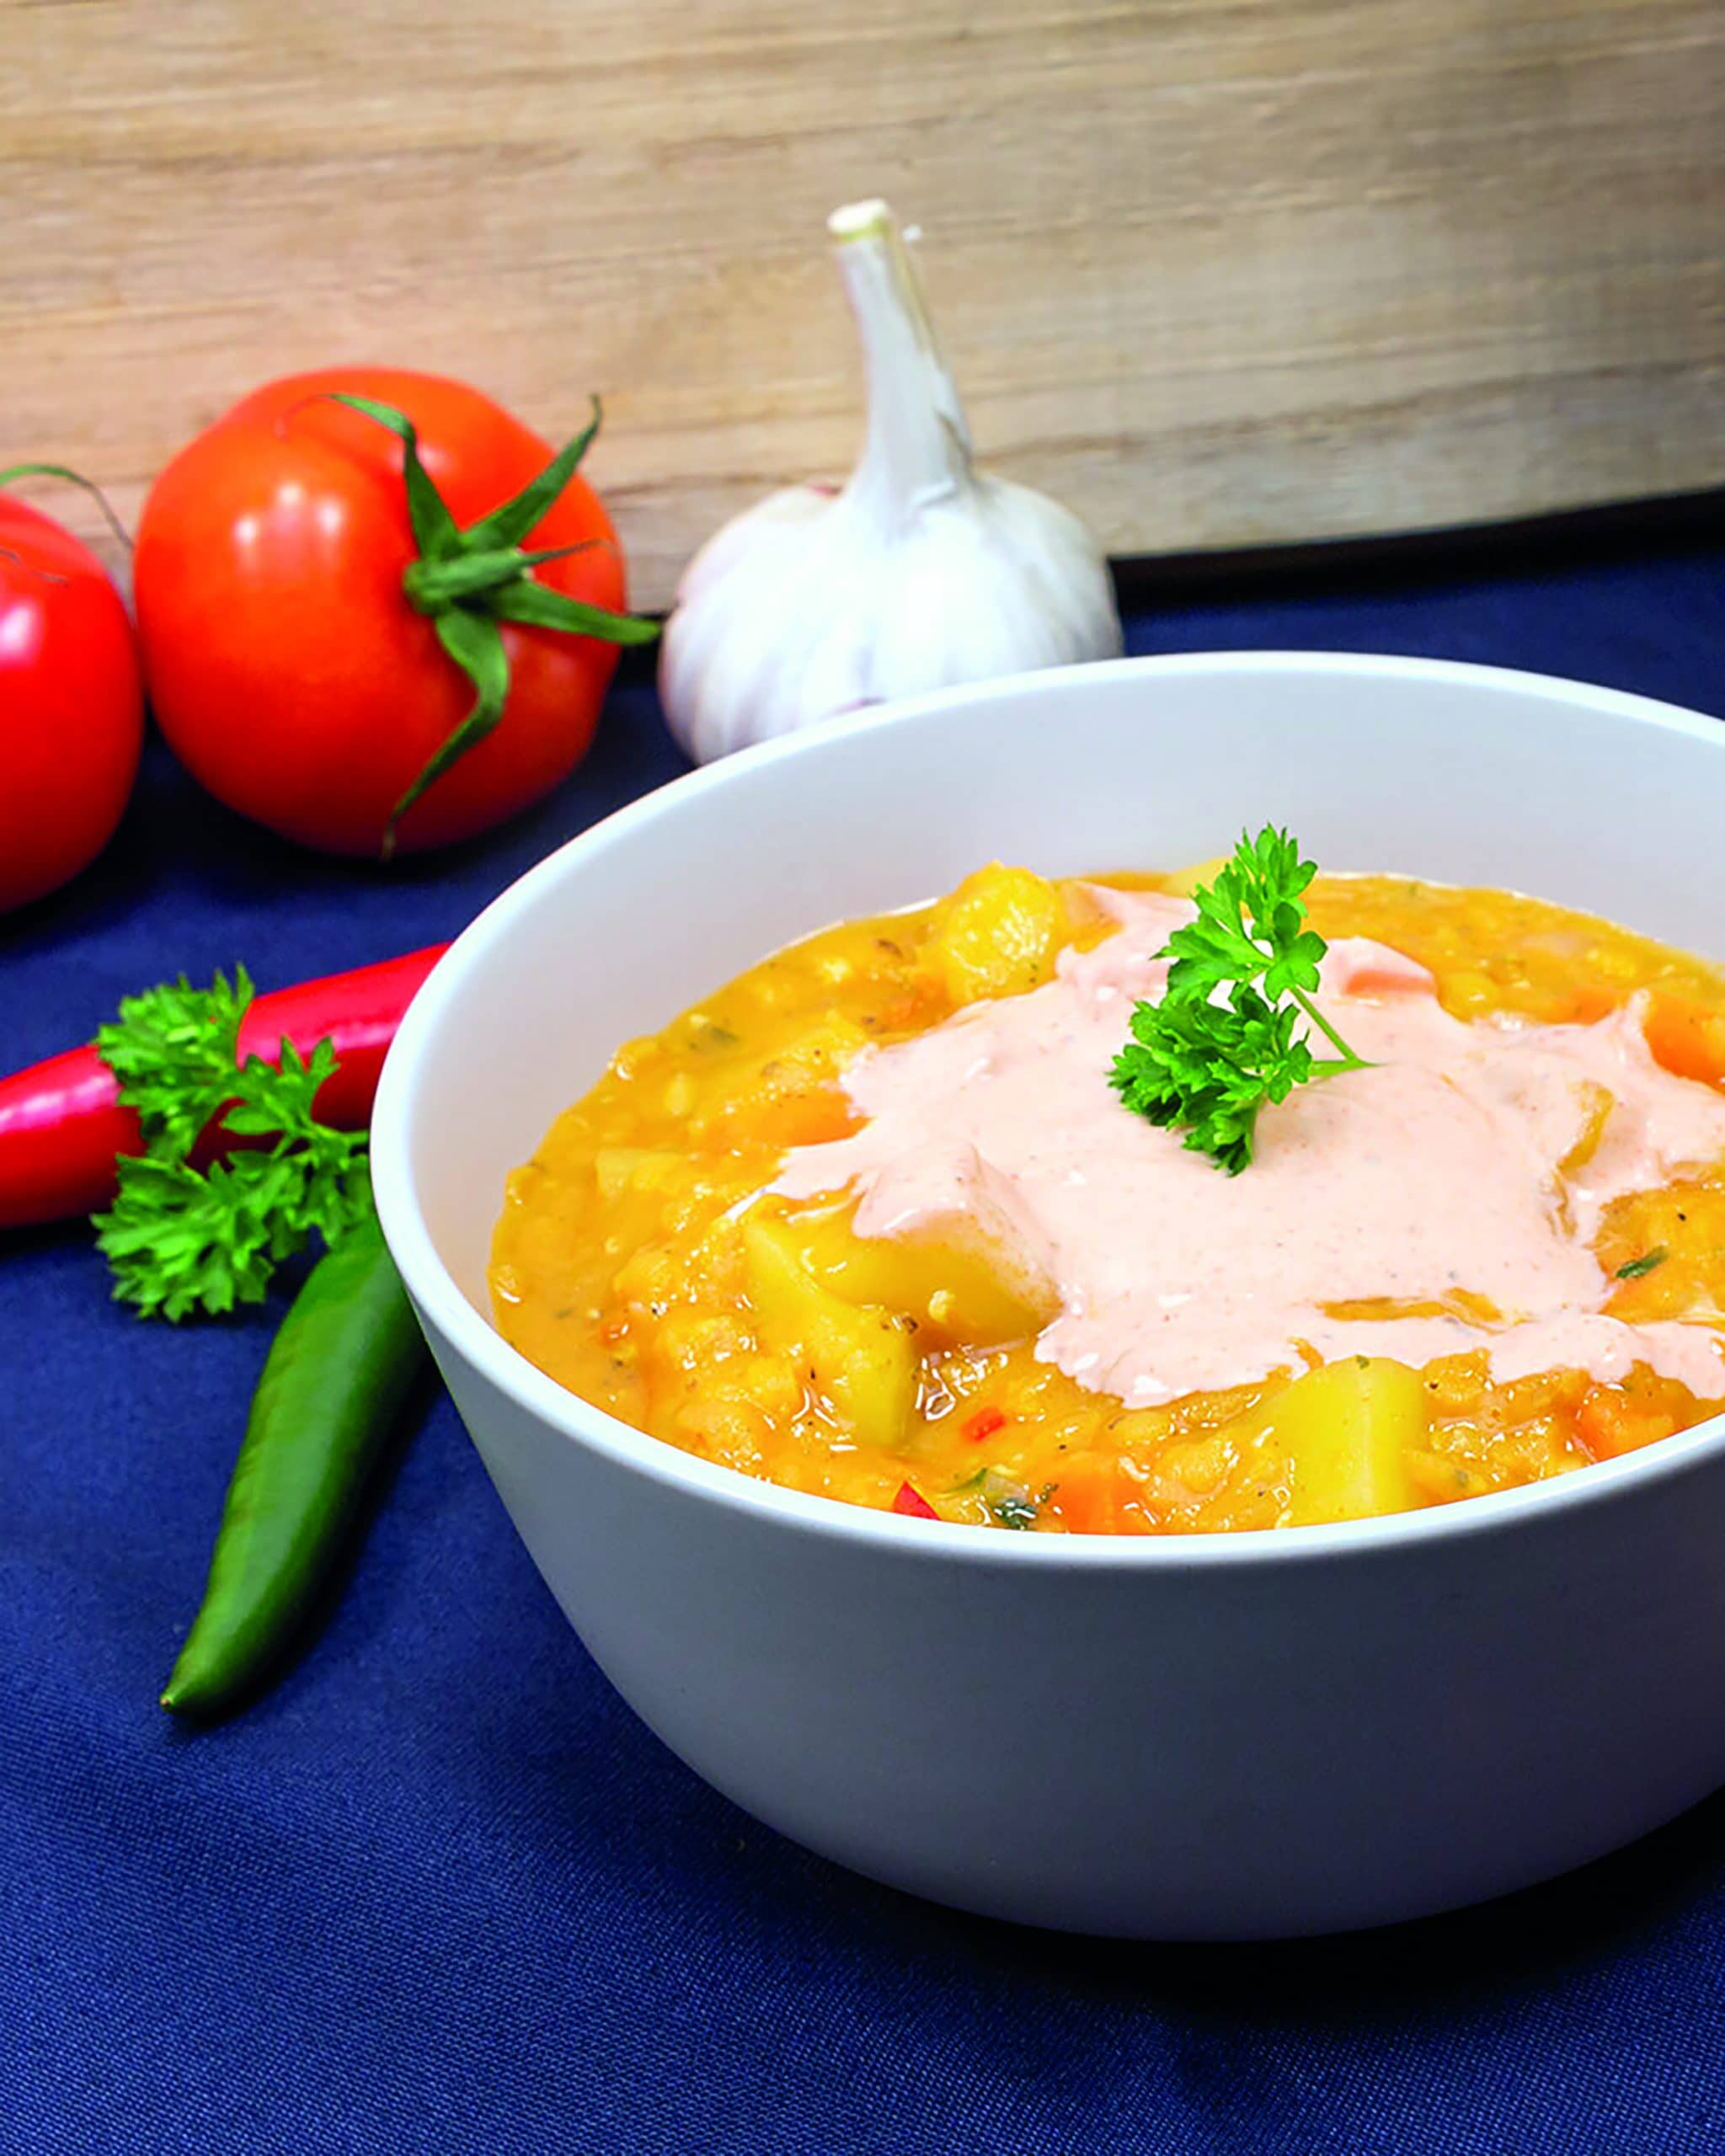 Potato soup and red lentils Photo: © KMG / die-kartoffel.de